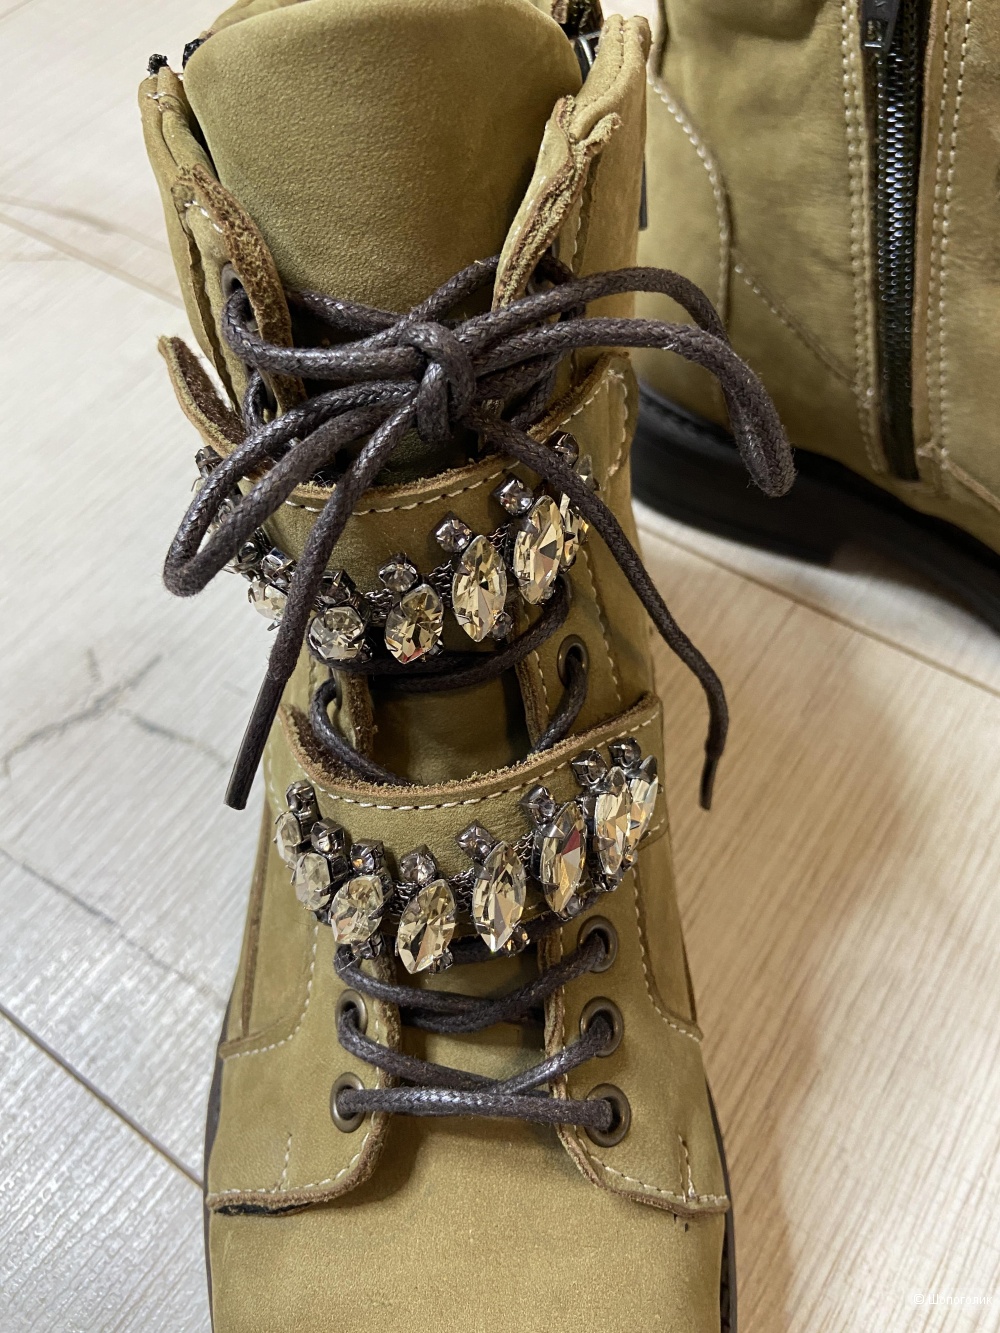 Ботинки Paolo Conte, размер 37